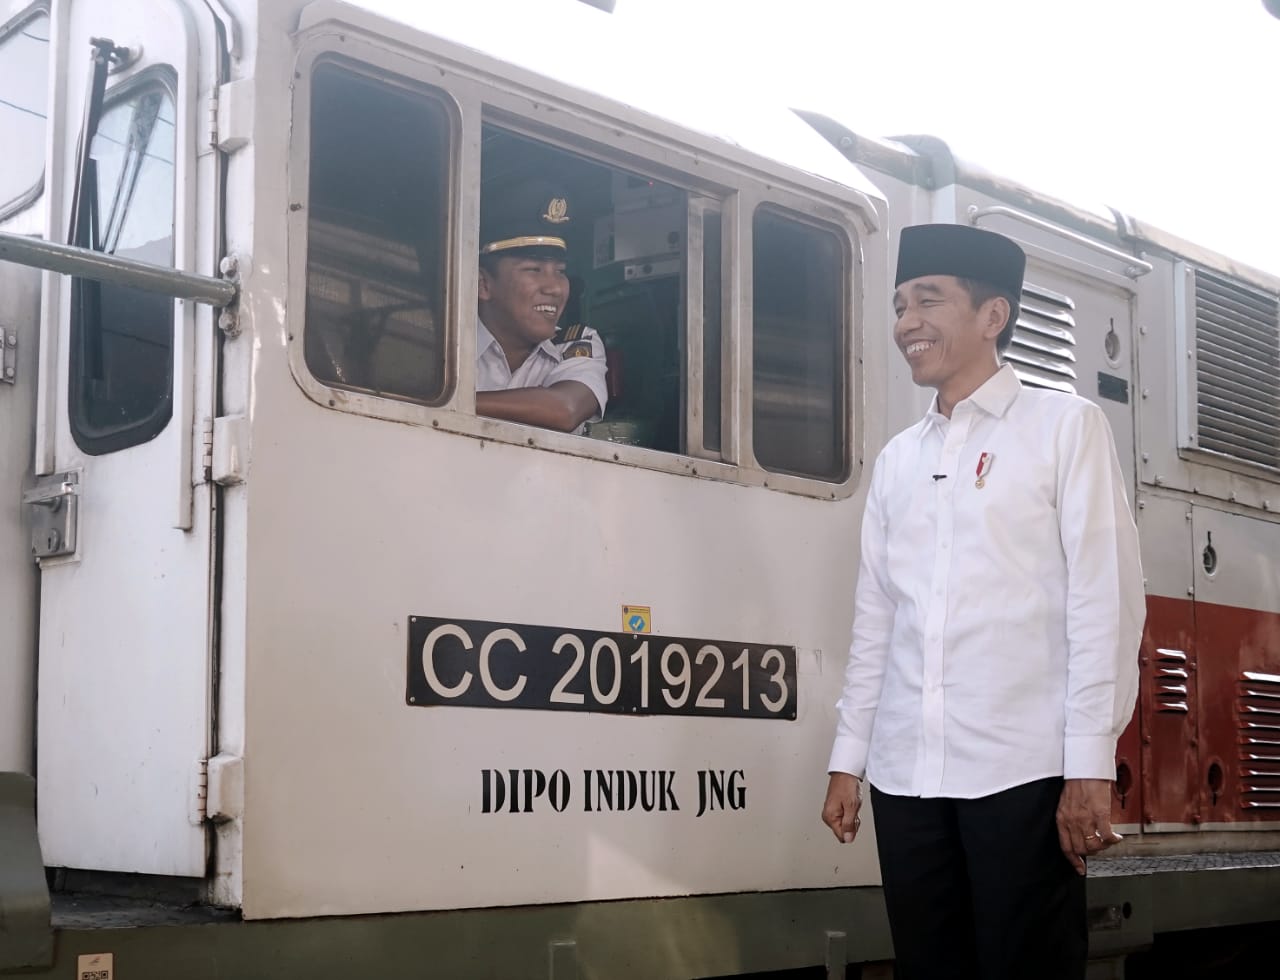 Rayakan Idulfitri, Presiden Jokowi: Ini Momen Mempererat Persatuan dan Persaudaraan Bangsa